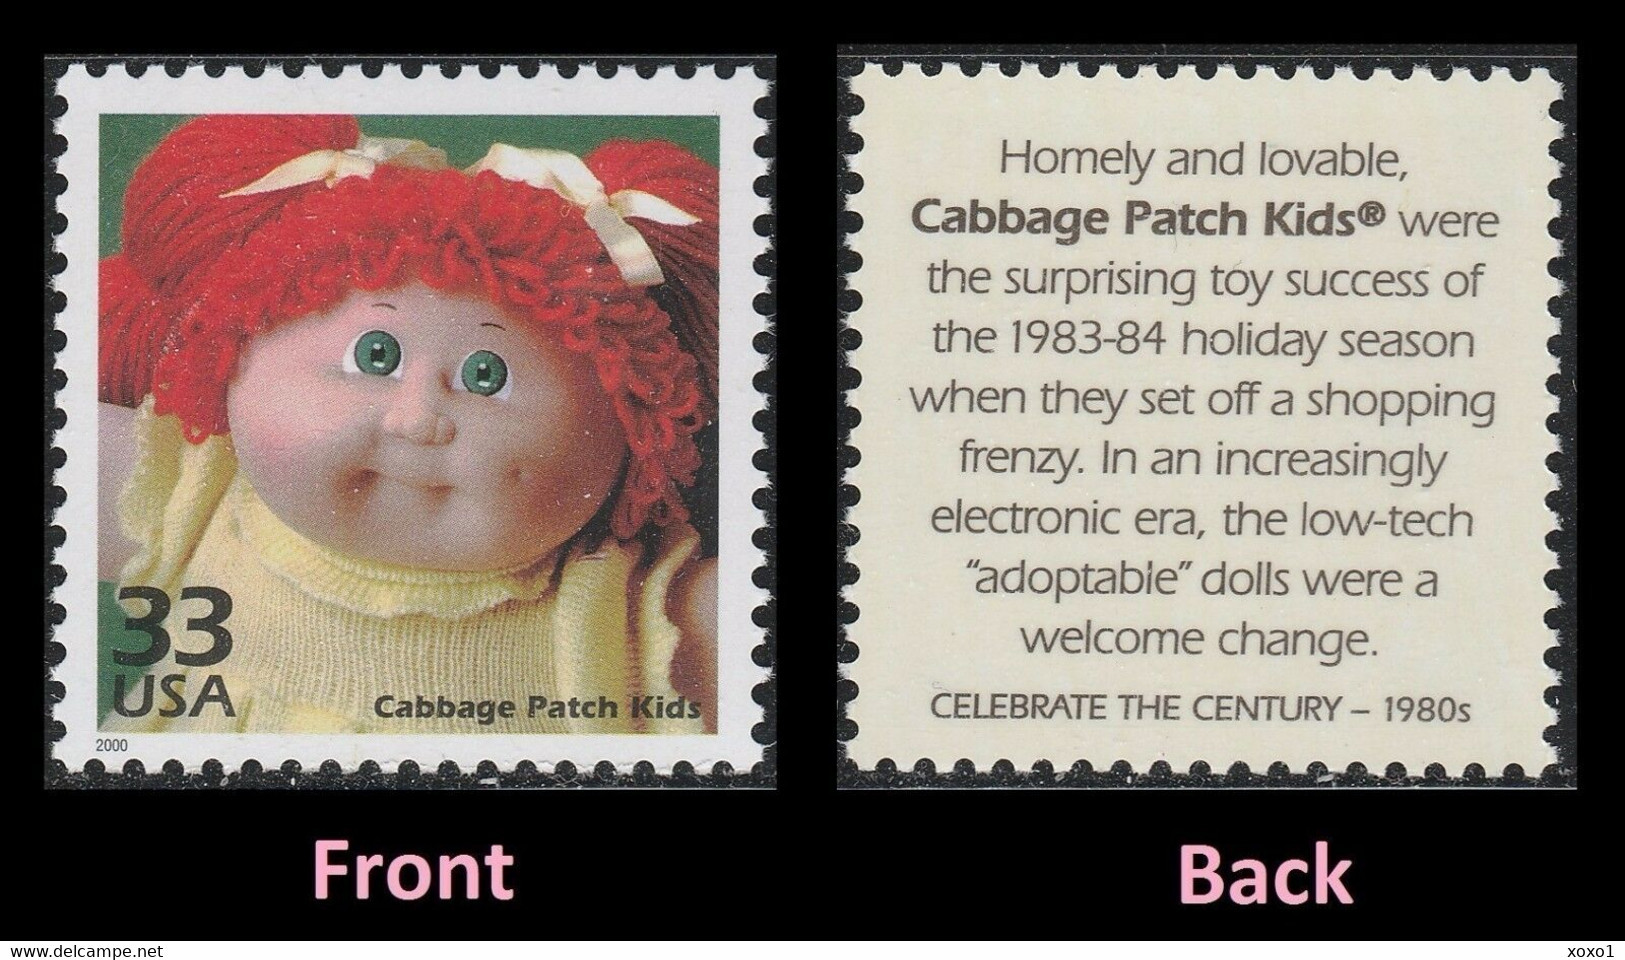 USA 2000 MiNr. 3251 Celebrate The Century 1980s  Childhood "Cabbage Patch Kids" Toy Dolls 1v MNH ** 0,80 € - Poppen